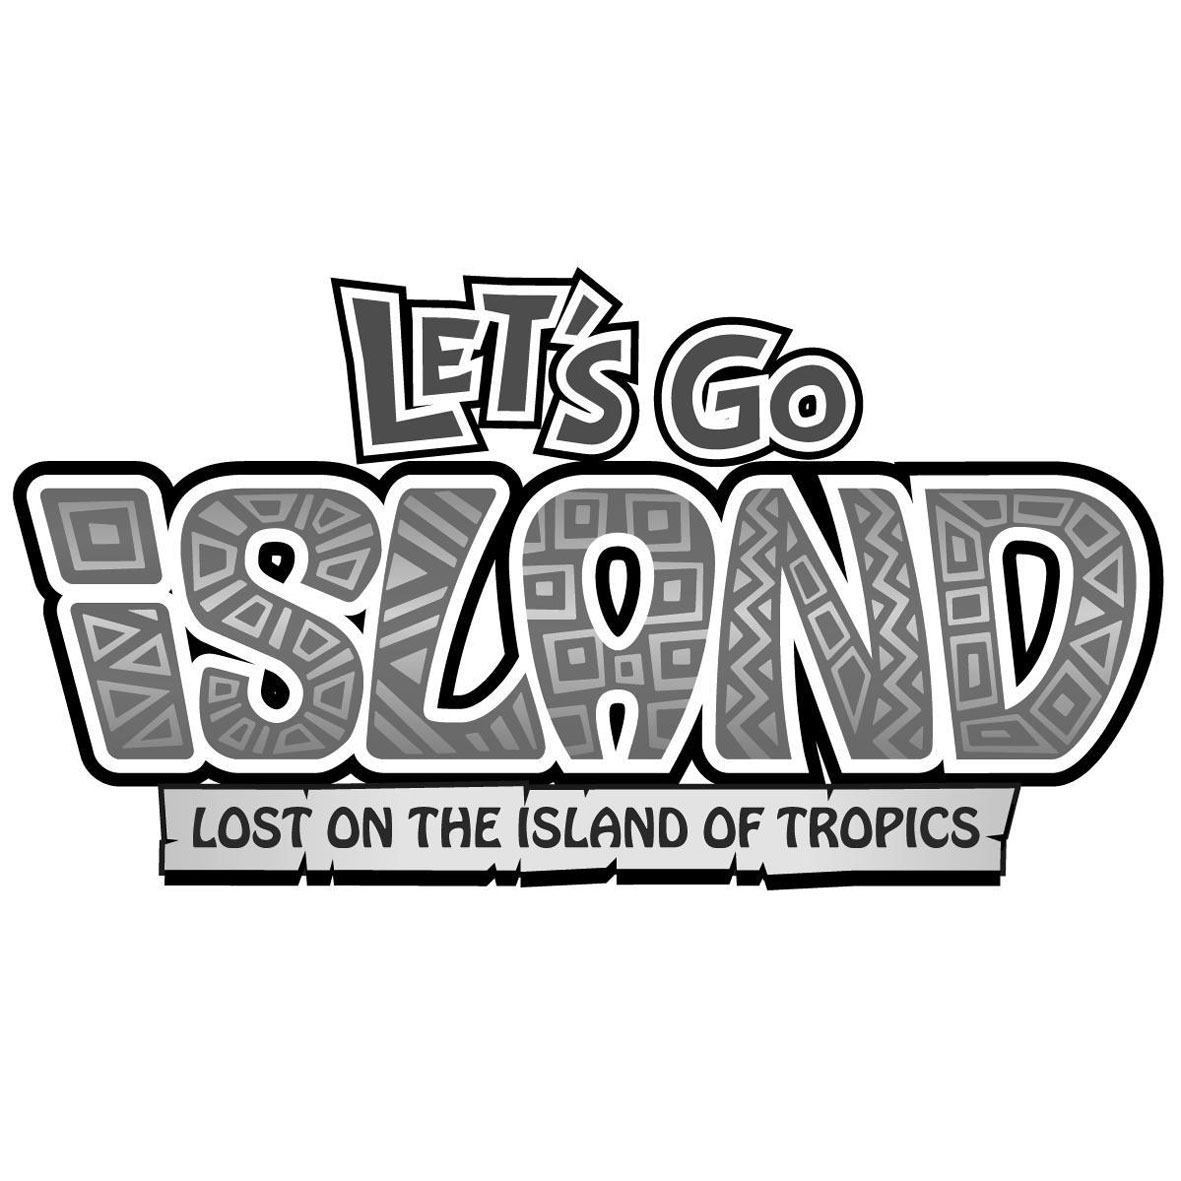 Lets island. Lets go Jungle игра. Lets go Island Sega. Lets go Jungle Lost on the Island of Spice. Let's go Jungle Arcade.